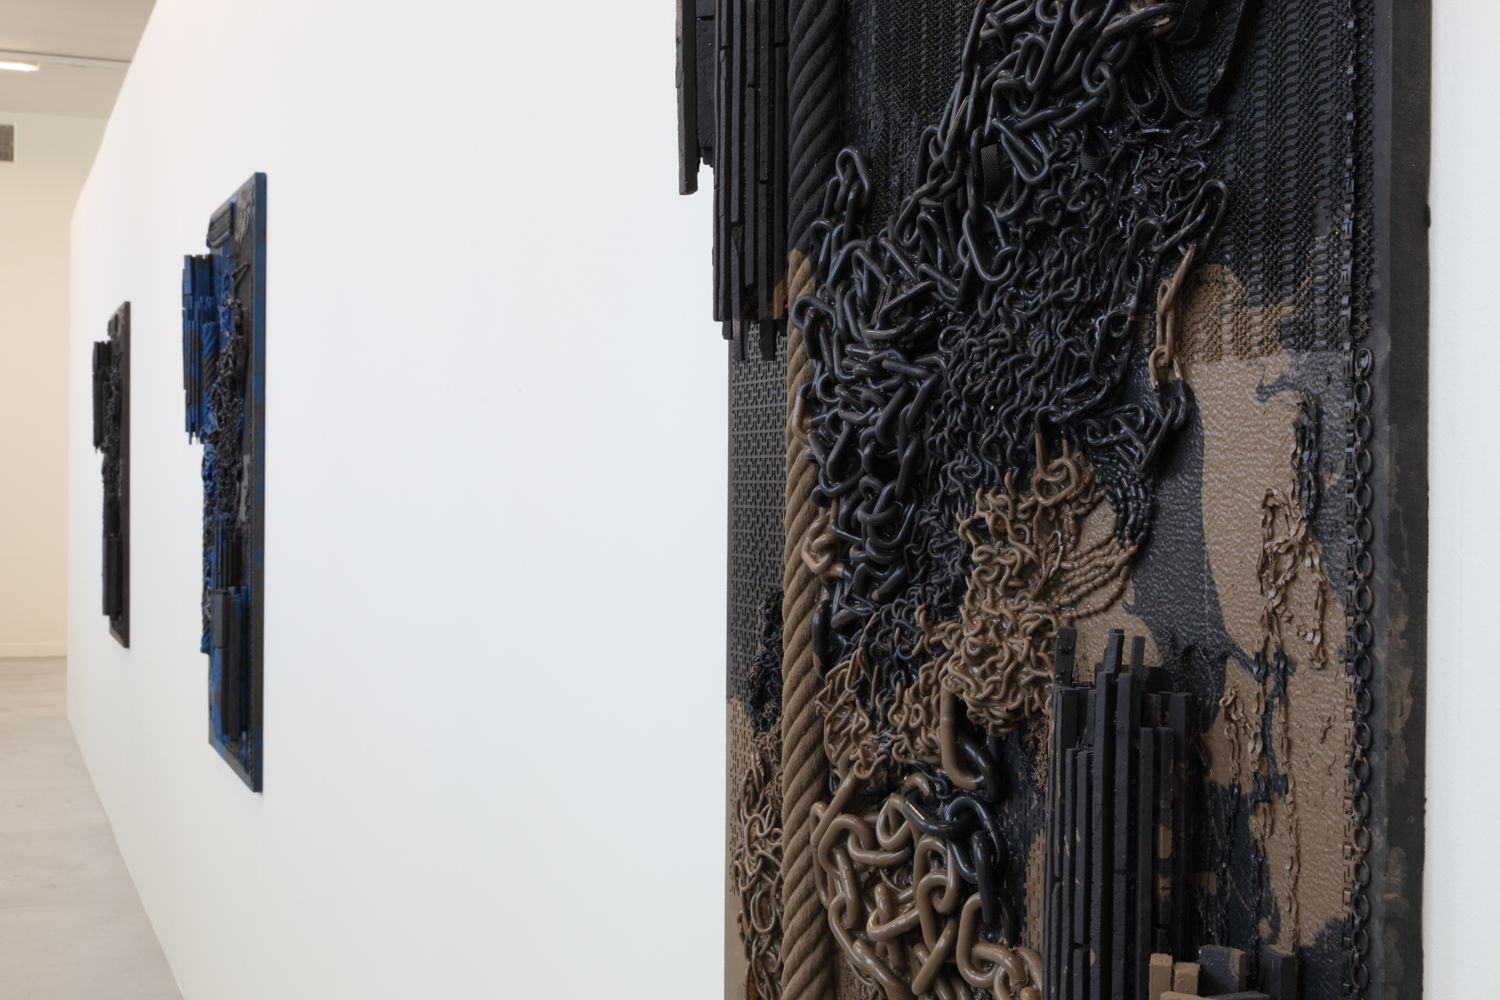 Isabelle Cornaro, Orgon Doors I, 2013
© de kunstenaar & M-Museum Leuven / Dirk Pauwels
